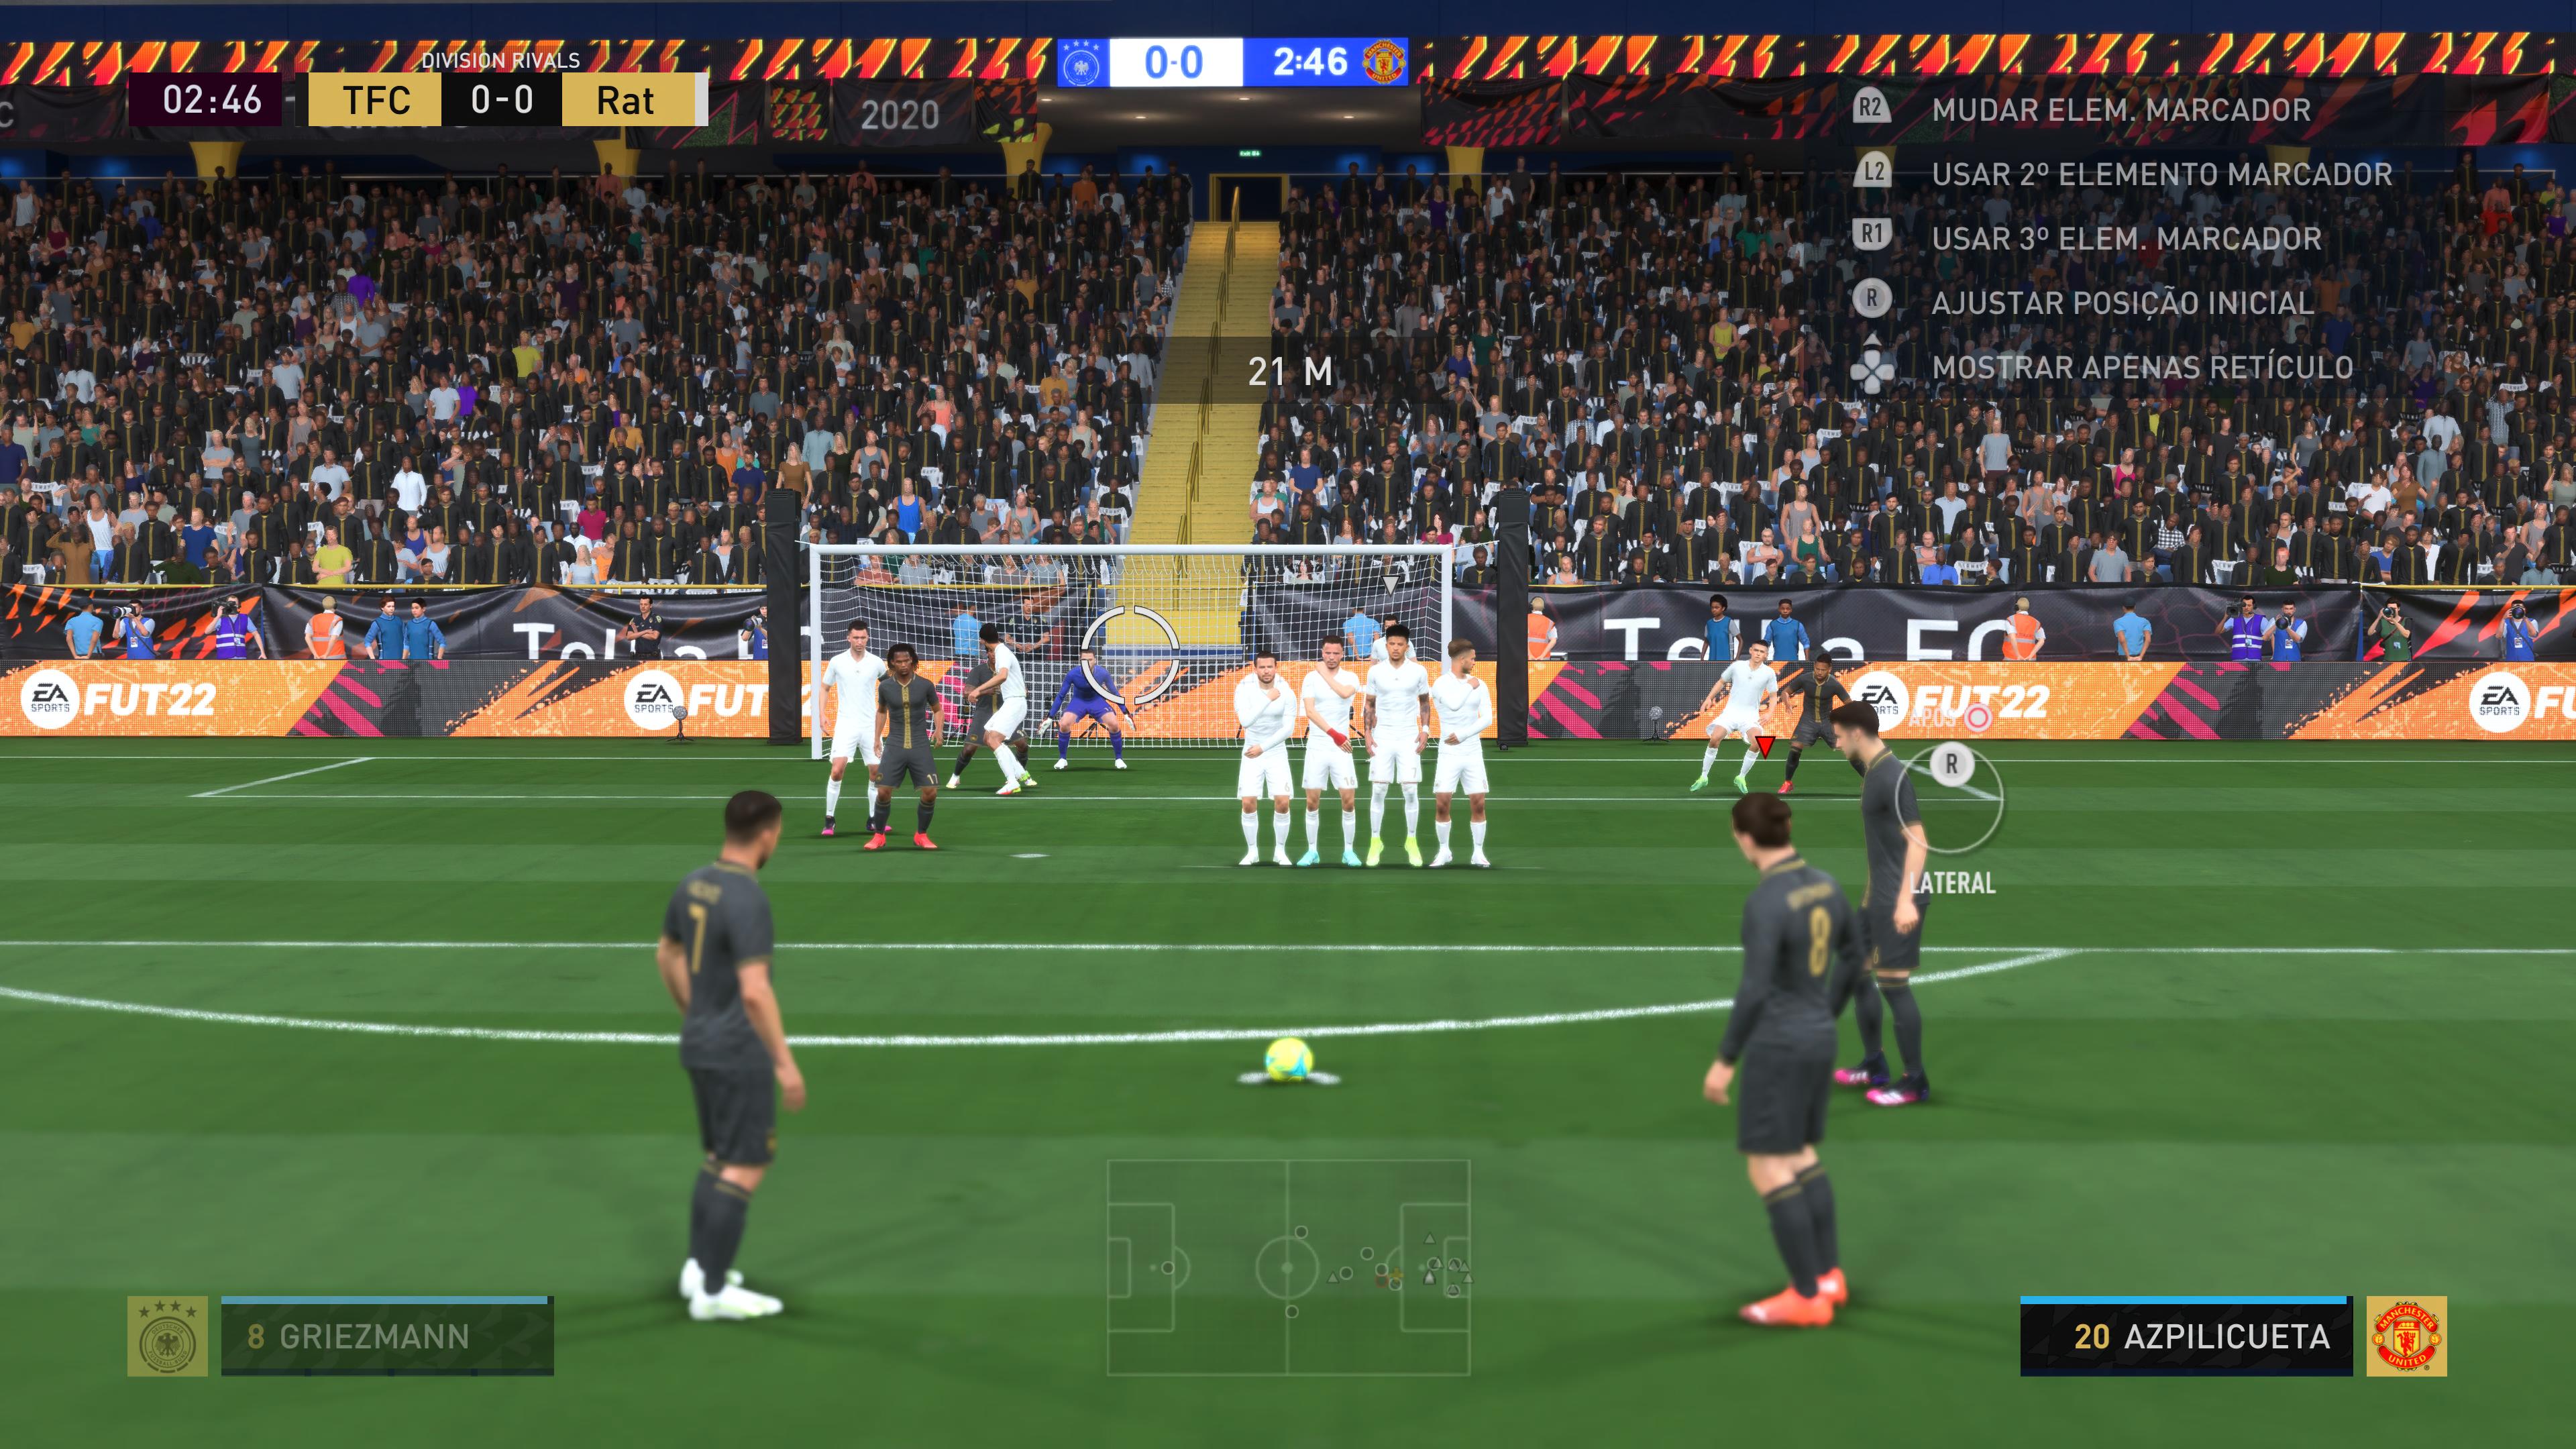 FIFA 22 Update 1.22